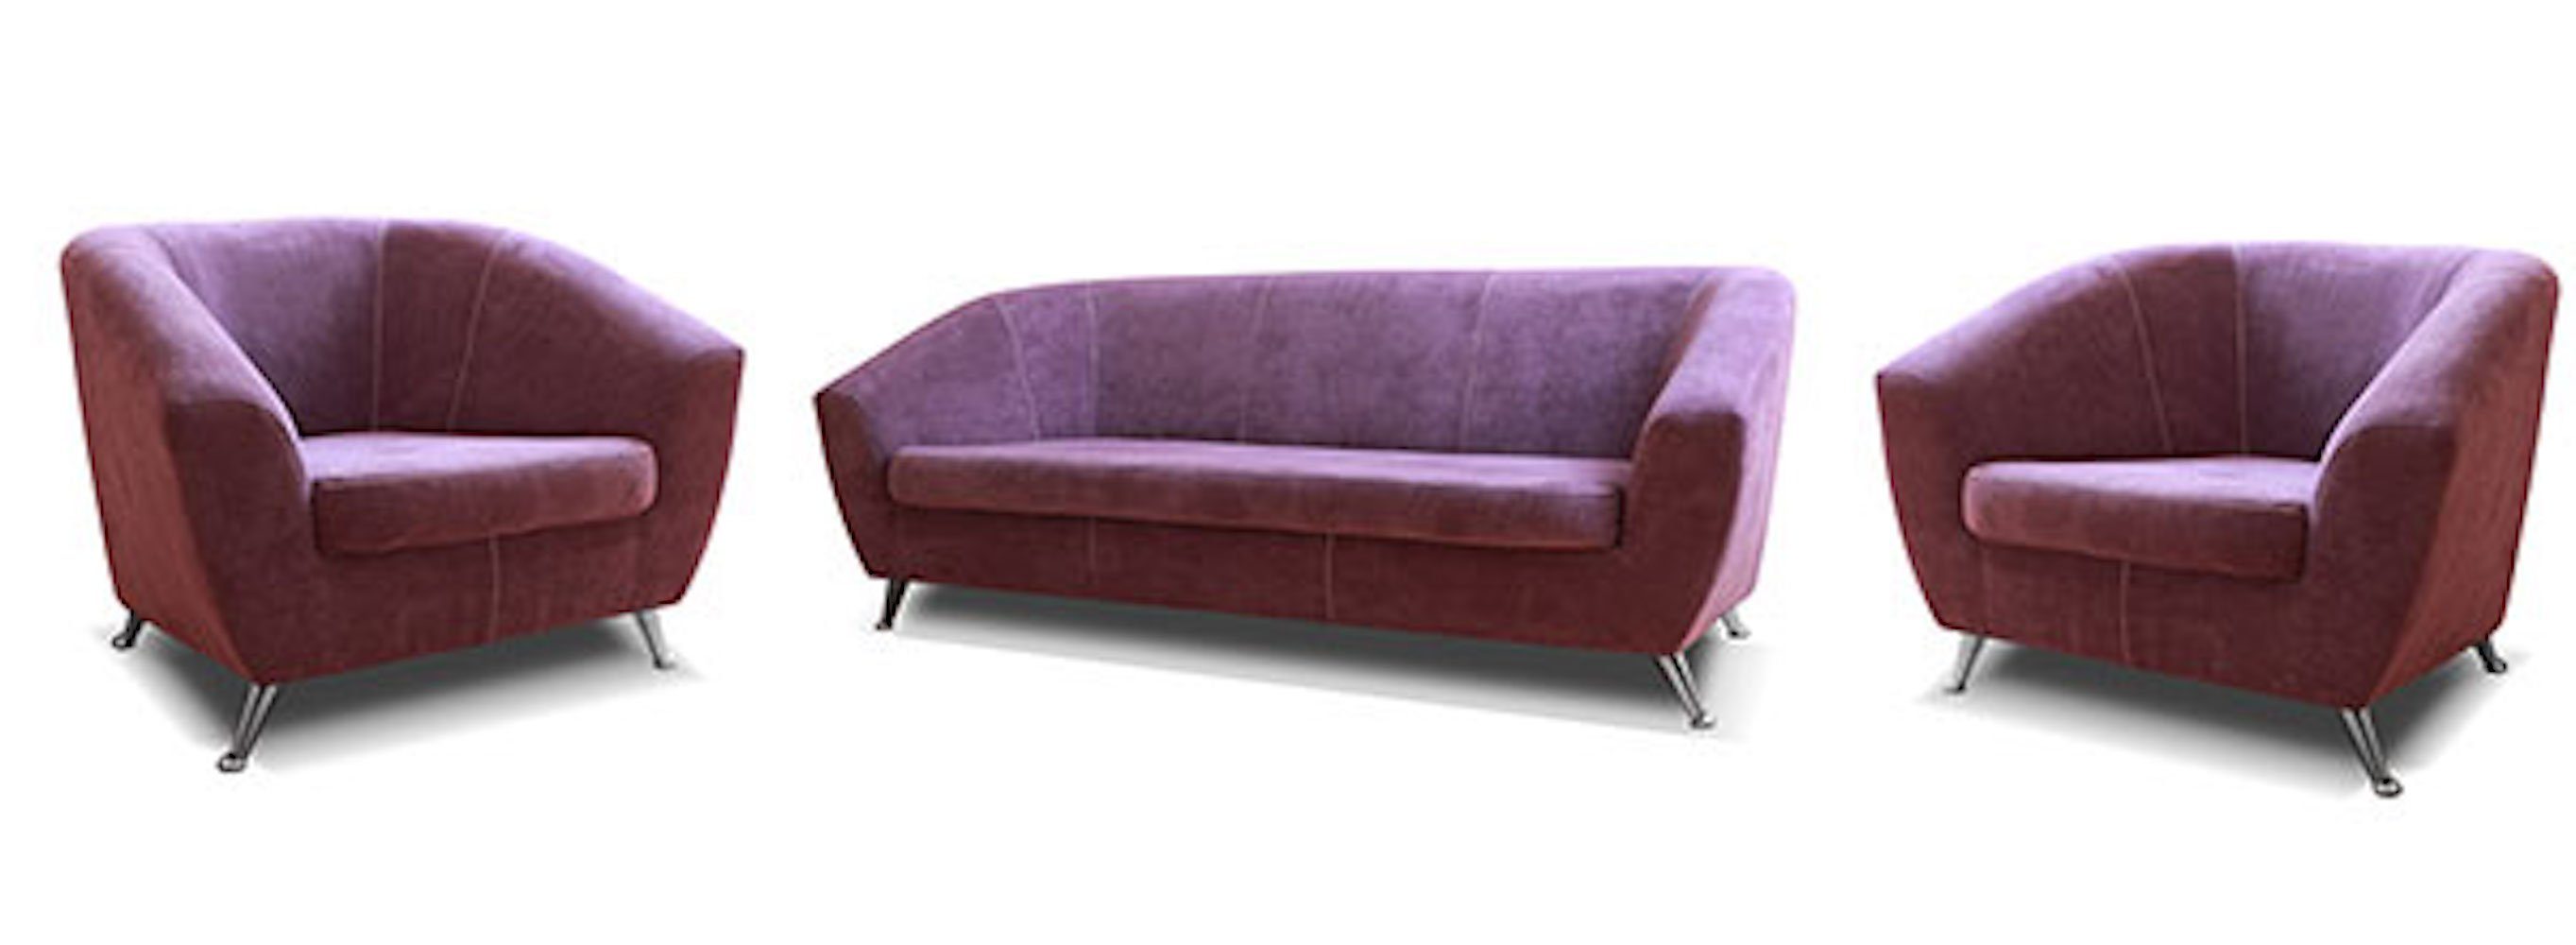 64) Lira, wählbar 3-teilig Feldmann-Wohnen Sessel Polstergarnitur 2 (Orinoco lila bestehend und aus Farbe Sofa